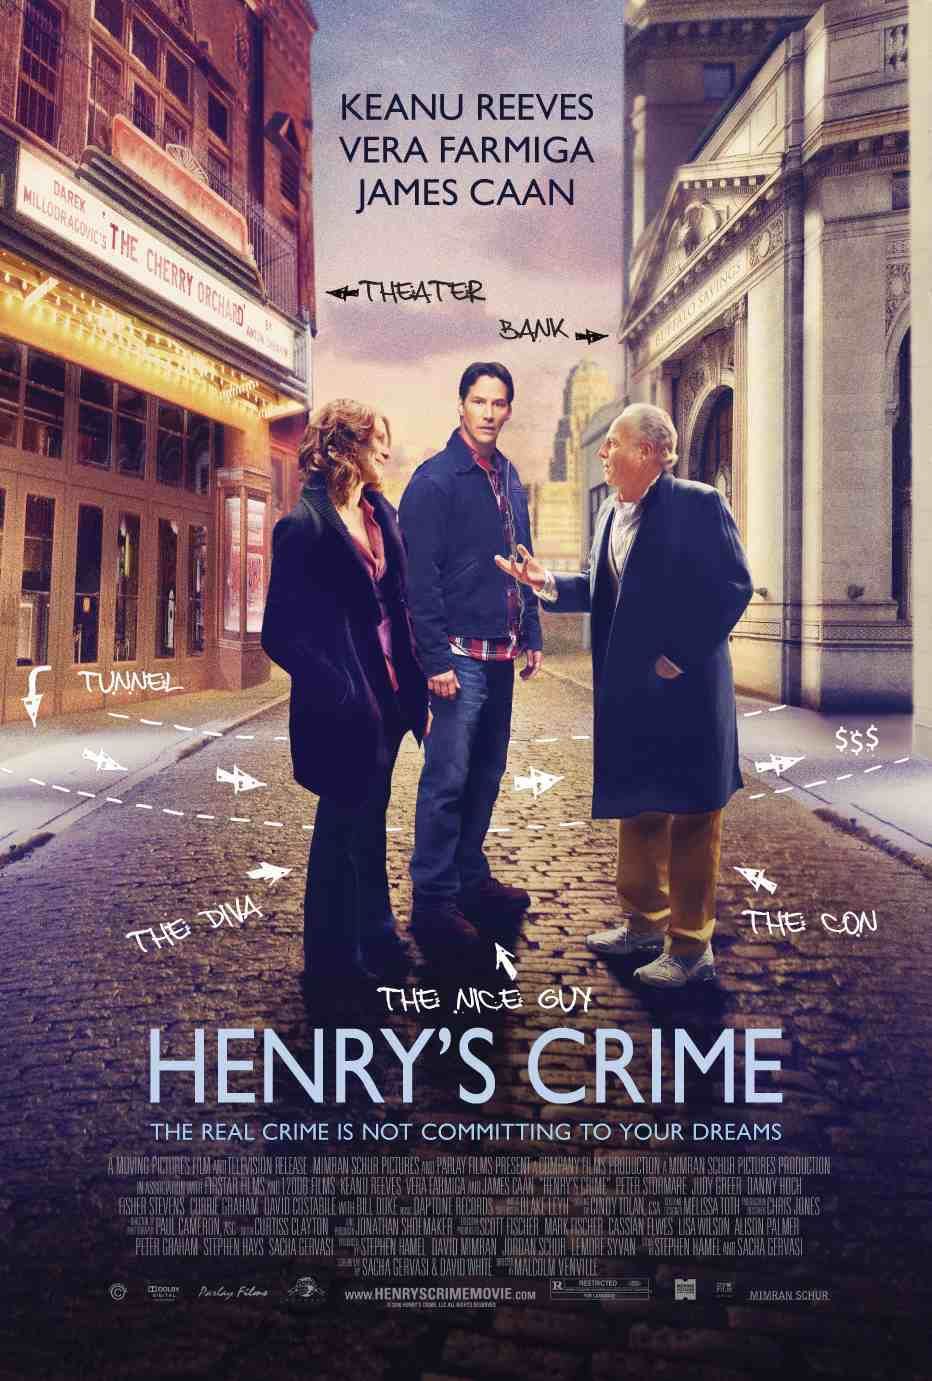 Henrys Crime (2010) Hindi Dubbed Movie